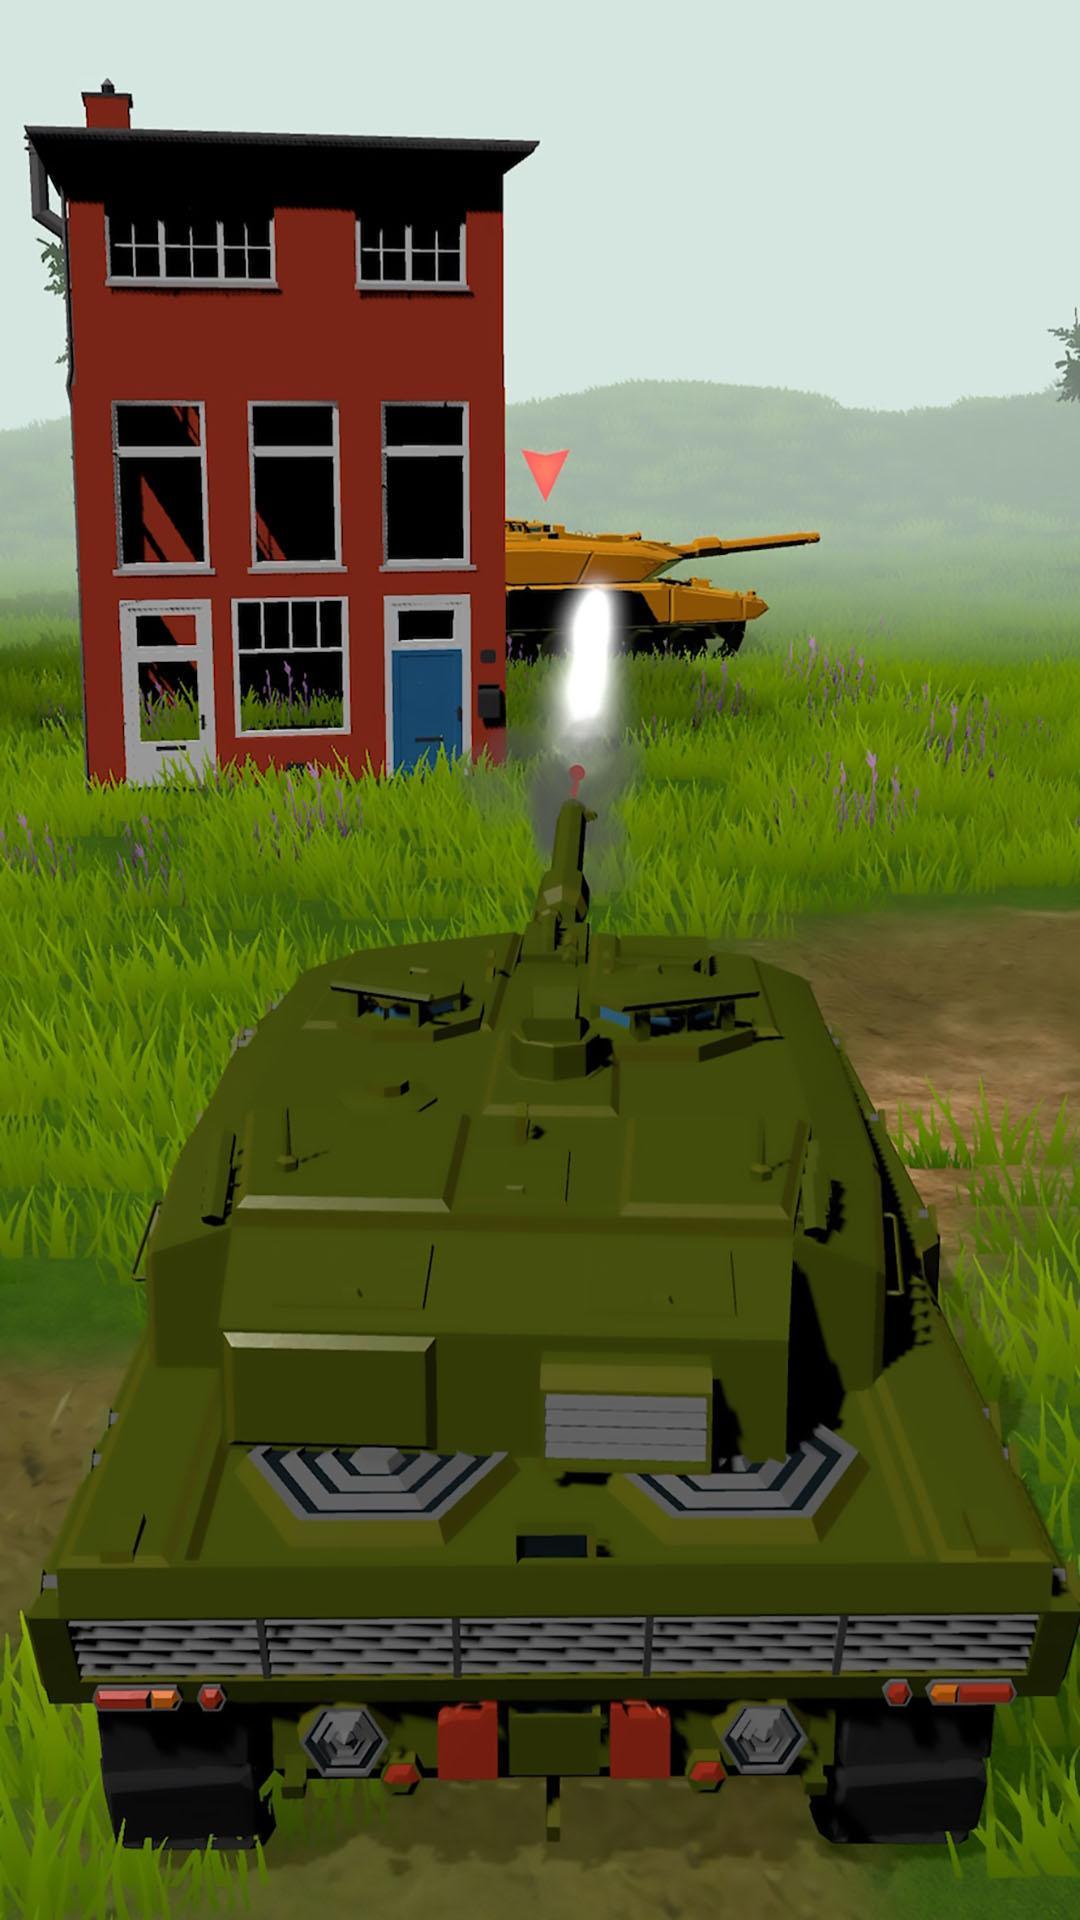 Игра атака на танк